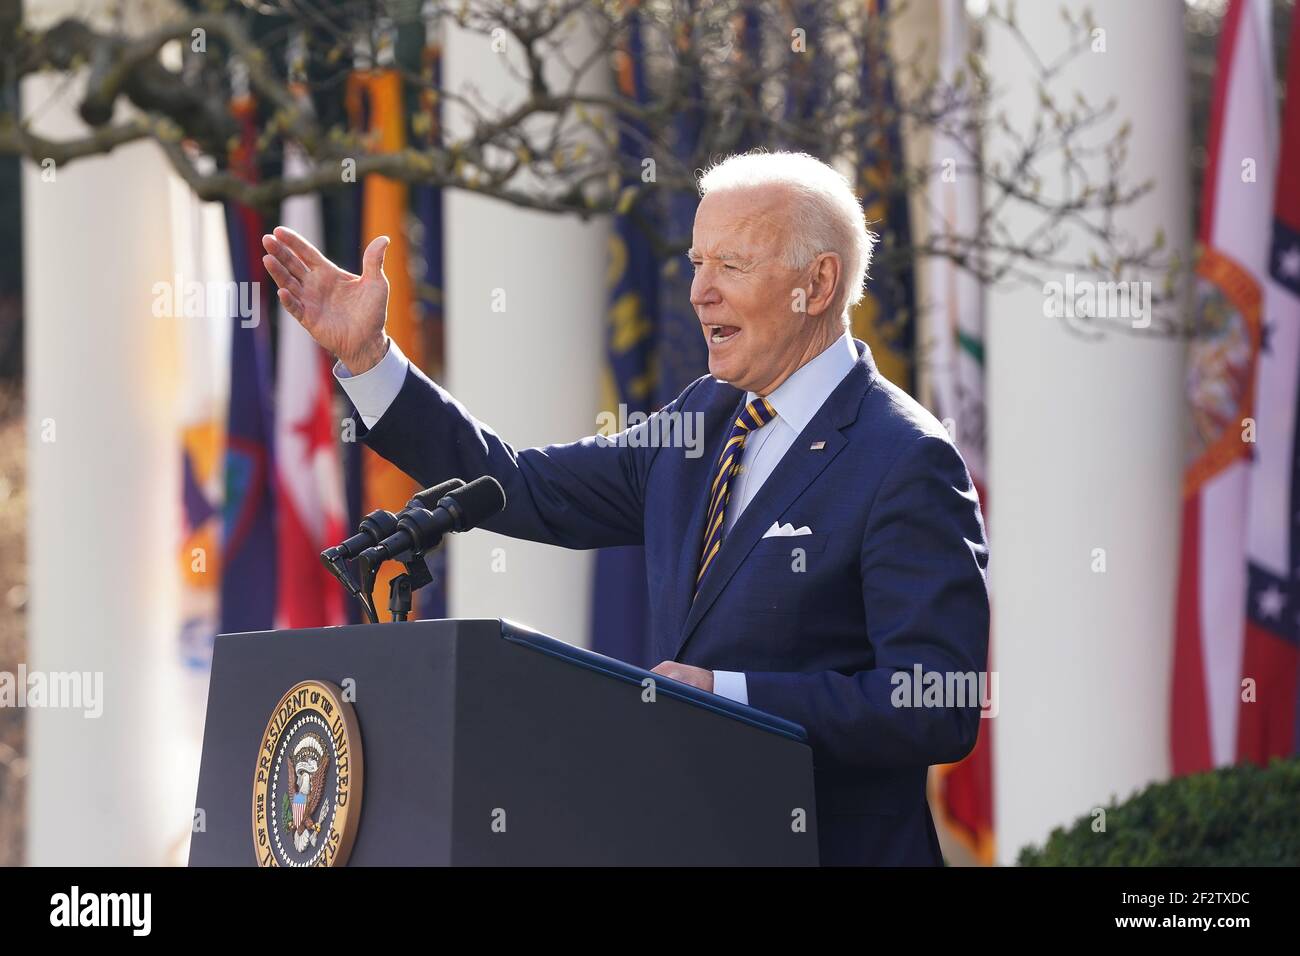 US-Präsident Joe Biden hält vom Rosengarten des Weißen Hauses in Washington DC, USA, am 12. März 2021 eine Rede zum amerikanischen Rettungsplan. Präsident Biden hat am 11. März das massive Coronavirus-Hilfspaket mit 1,9 Billionen USD (1,589 Trillion Euro) in Kraft gesetzt.Quelle: Jim LoScalzo/Pool via CNP /MediaPunch Stockfoto